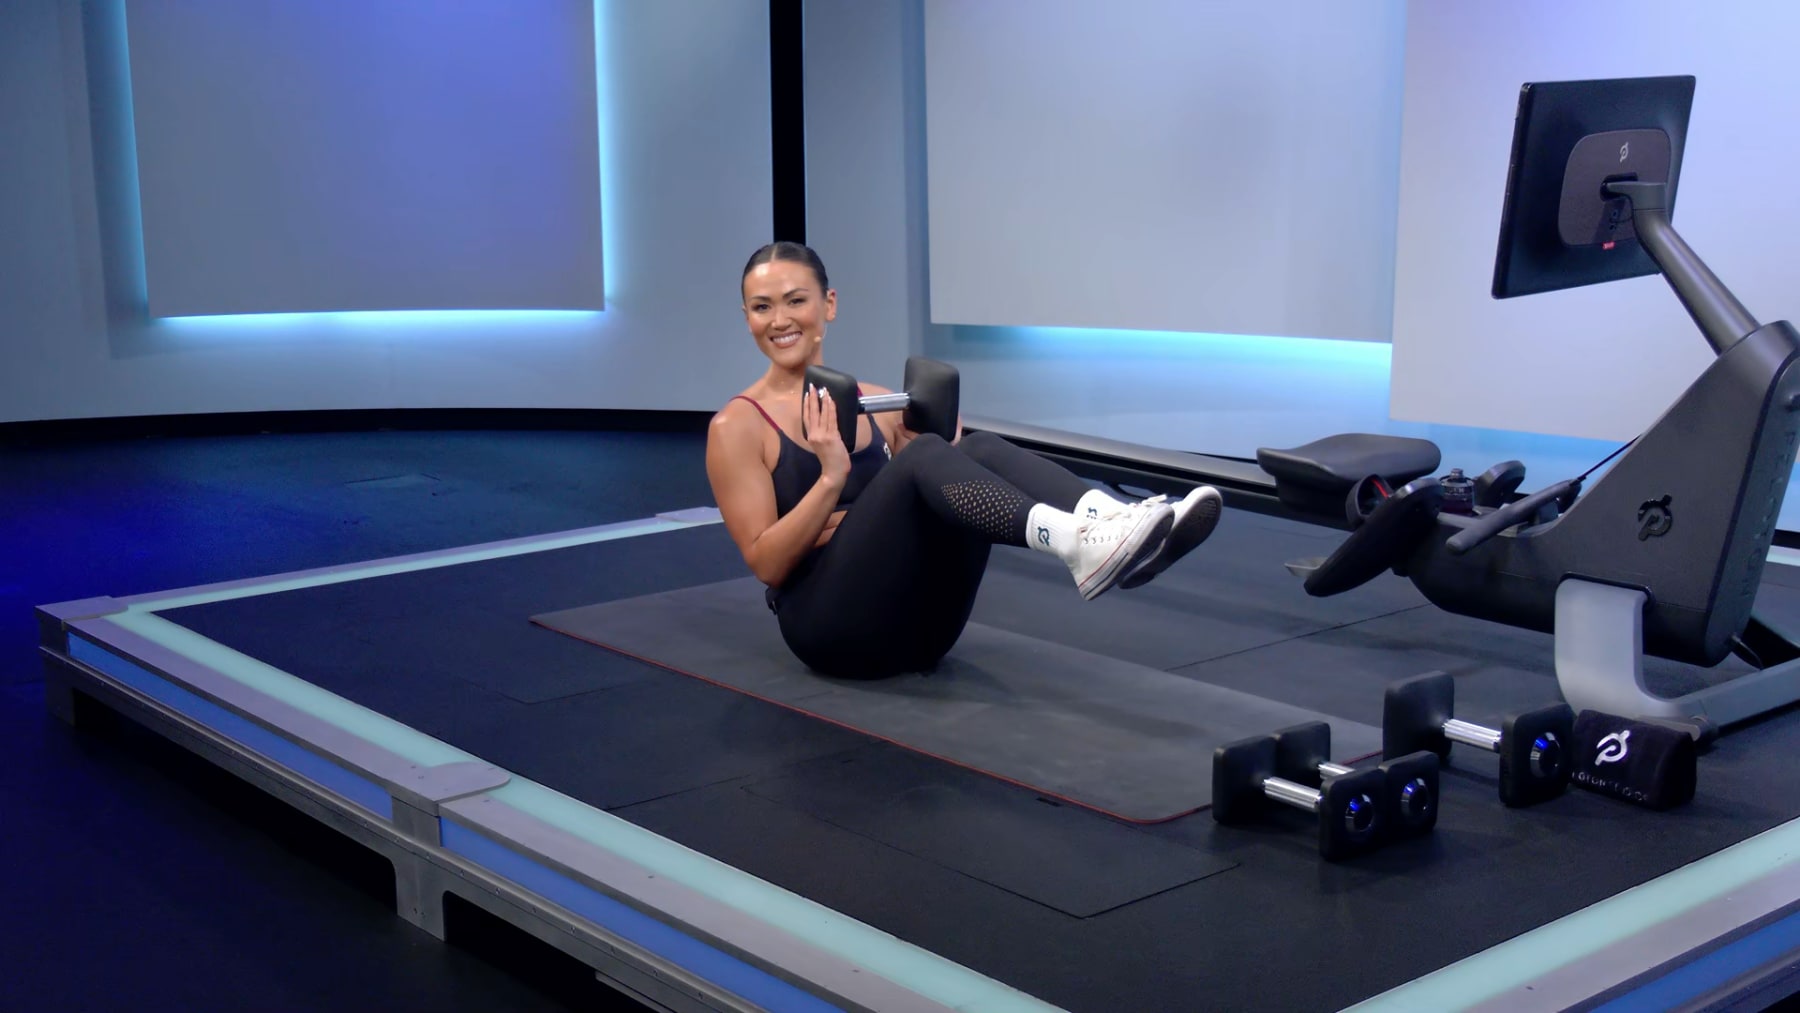 Pilates Reformer Workout, Full Body, 45 min